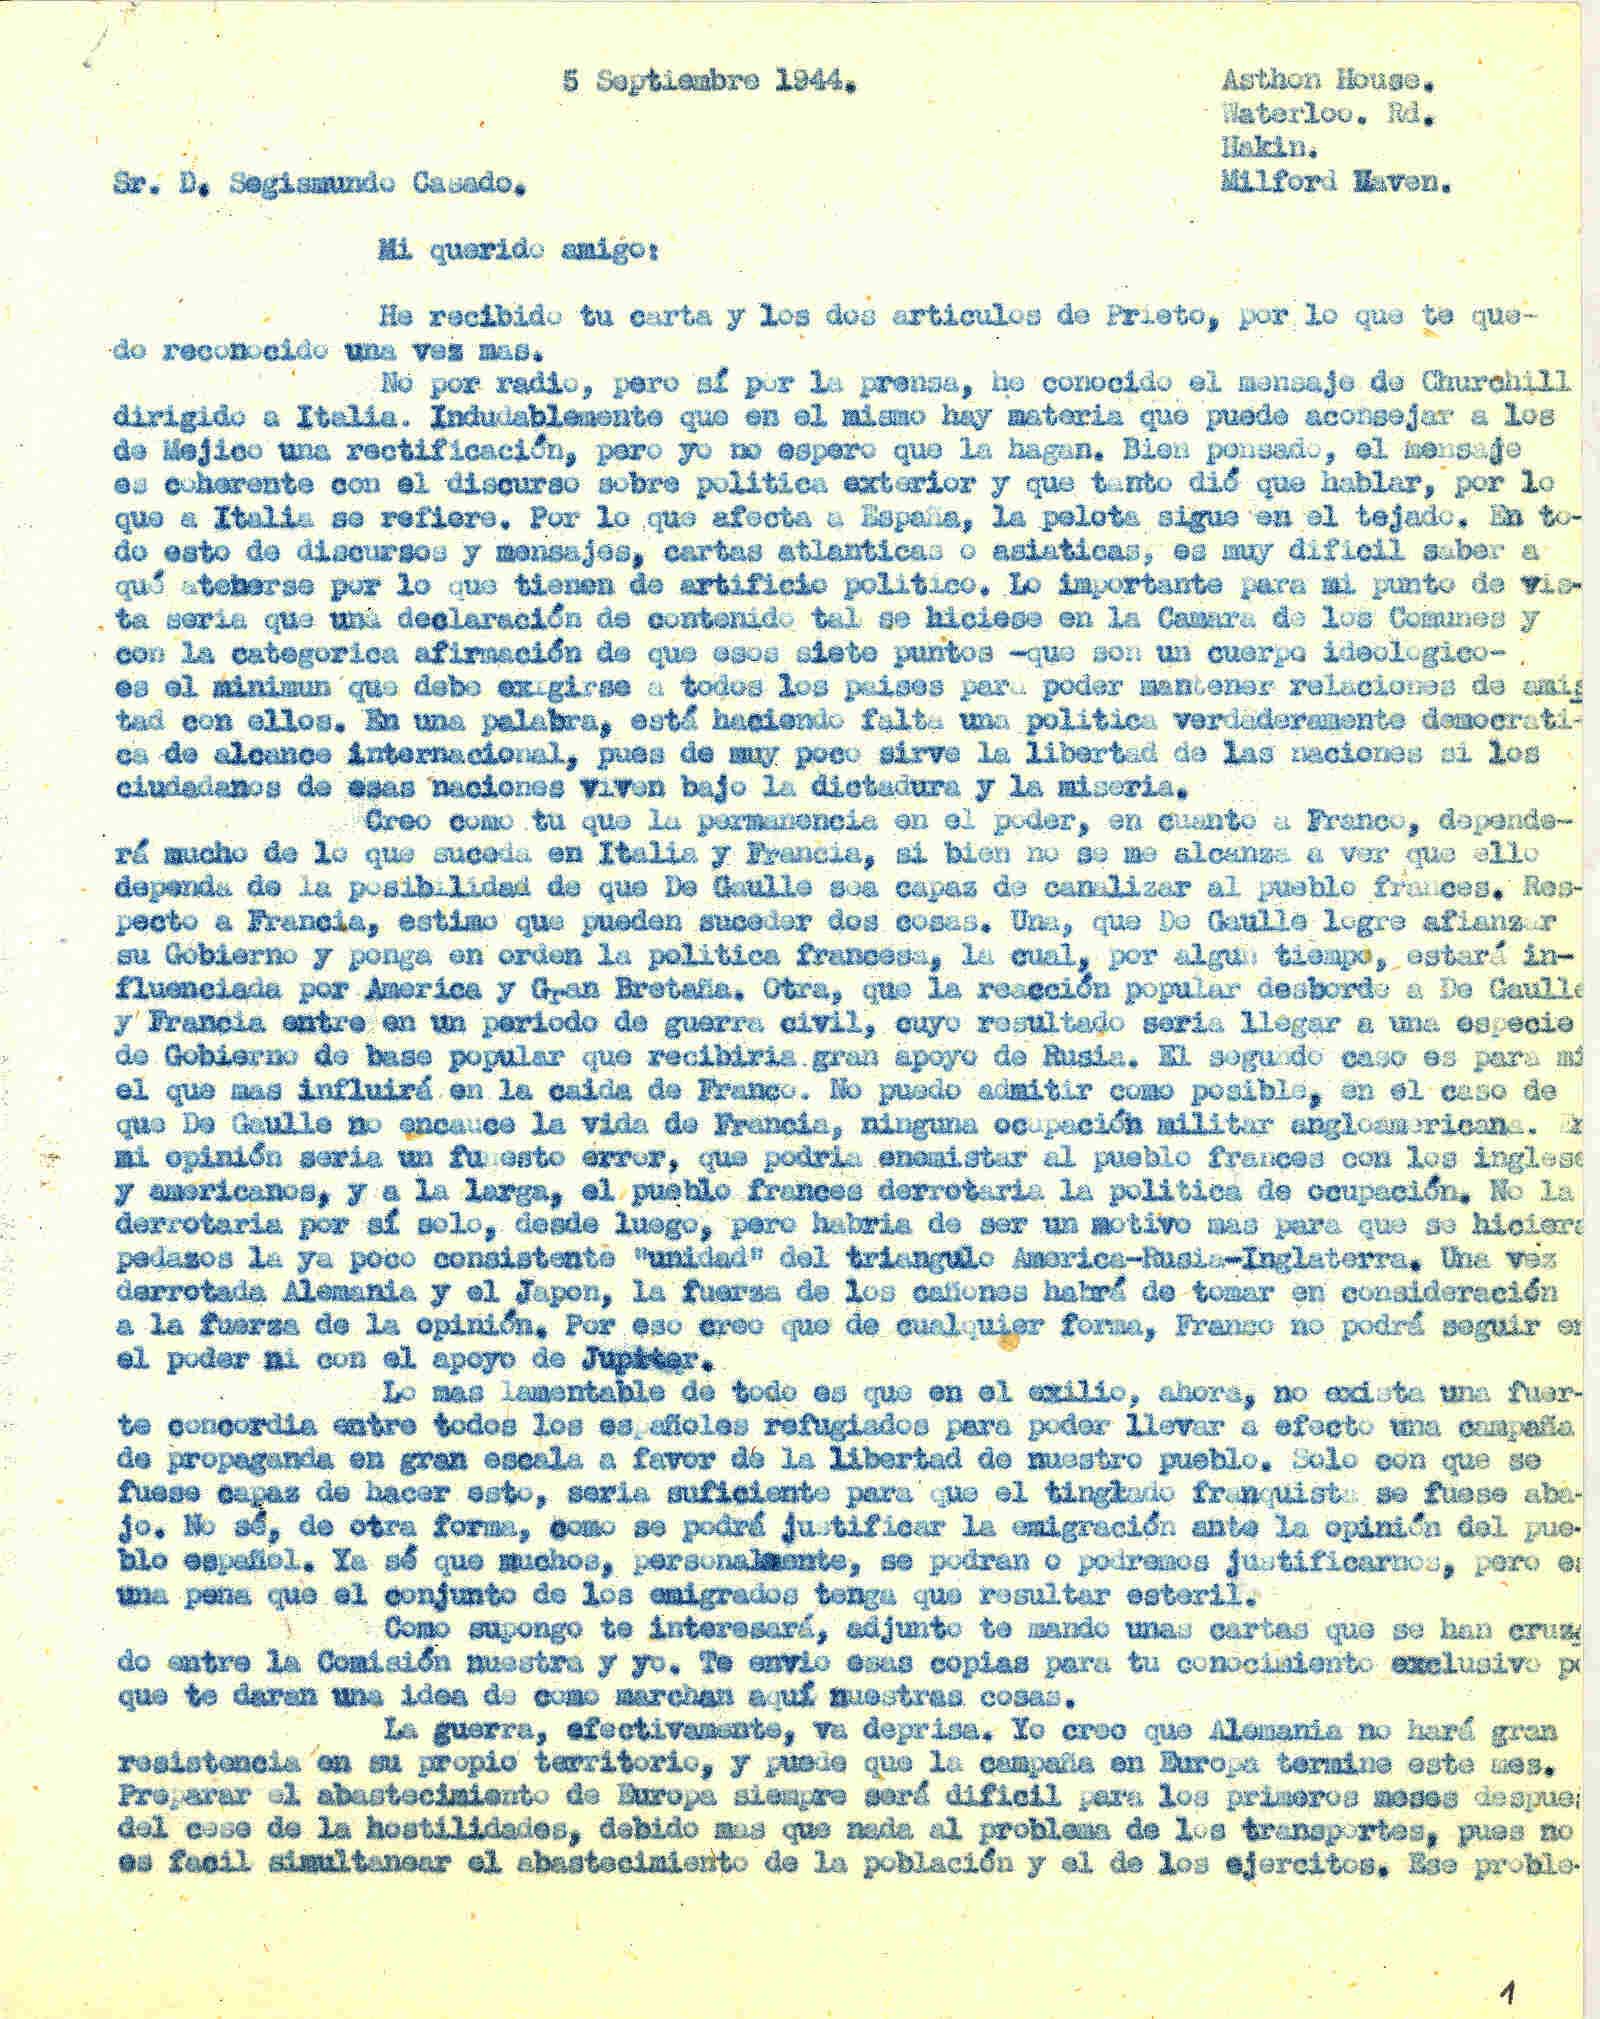 Carta a Segismundo Casado explicando la falta de política democrática de alcance internacional; de la estancia de Franco el poder y del discurso de Churchill al pueblo español.